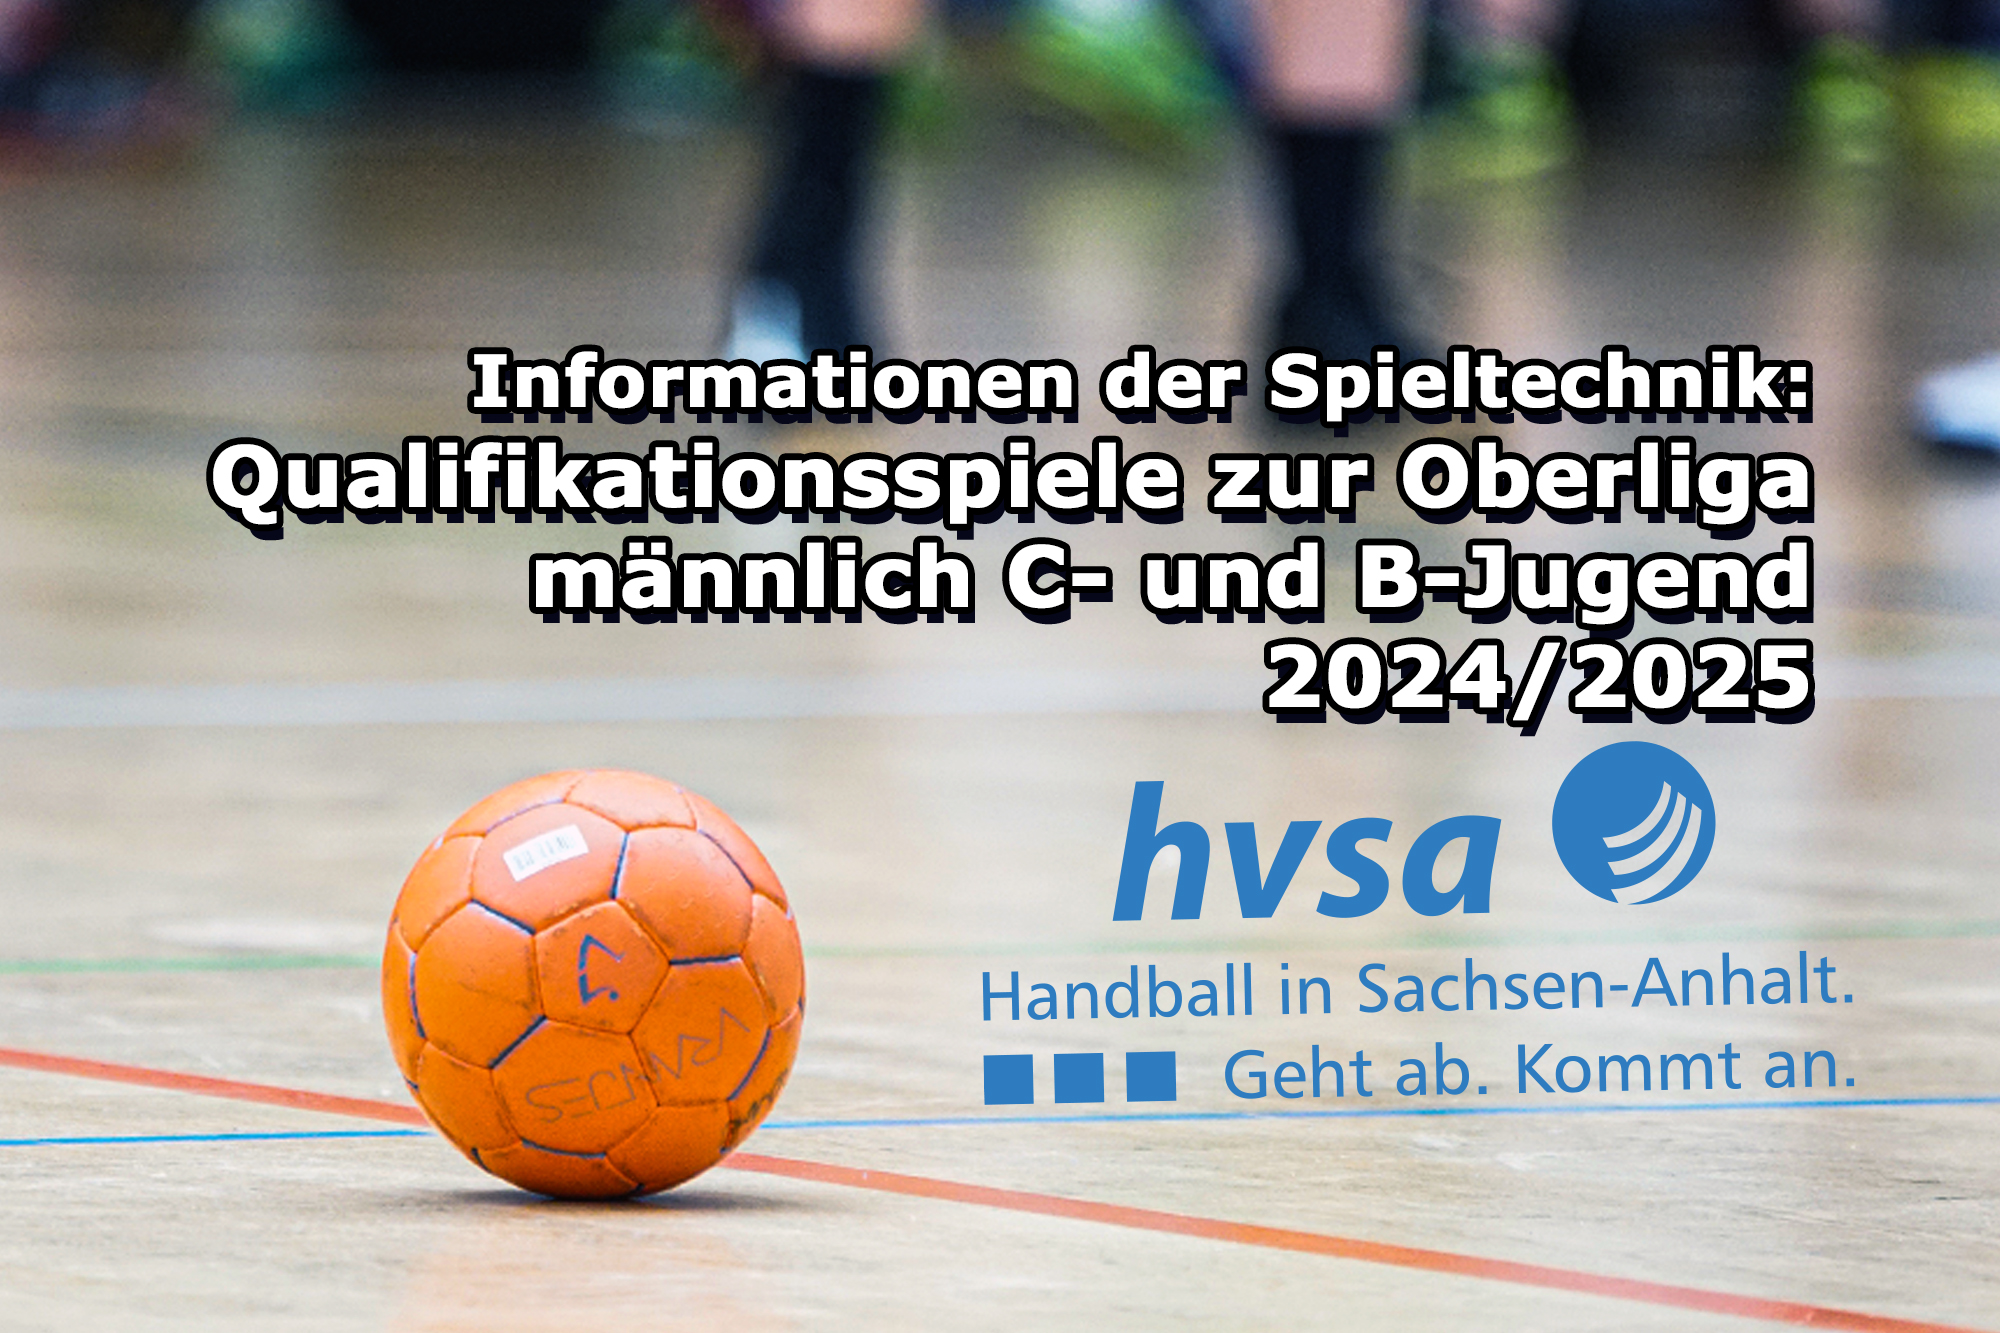 Qualifikationsspiele zur Oberliga männlich C- und B-Jugend 2024/2025